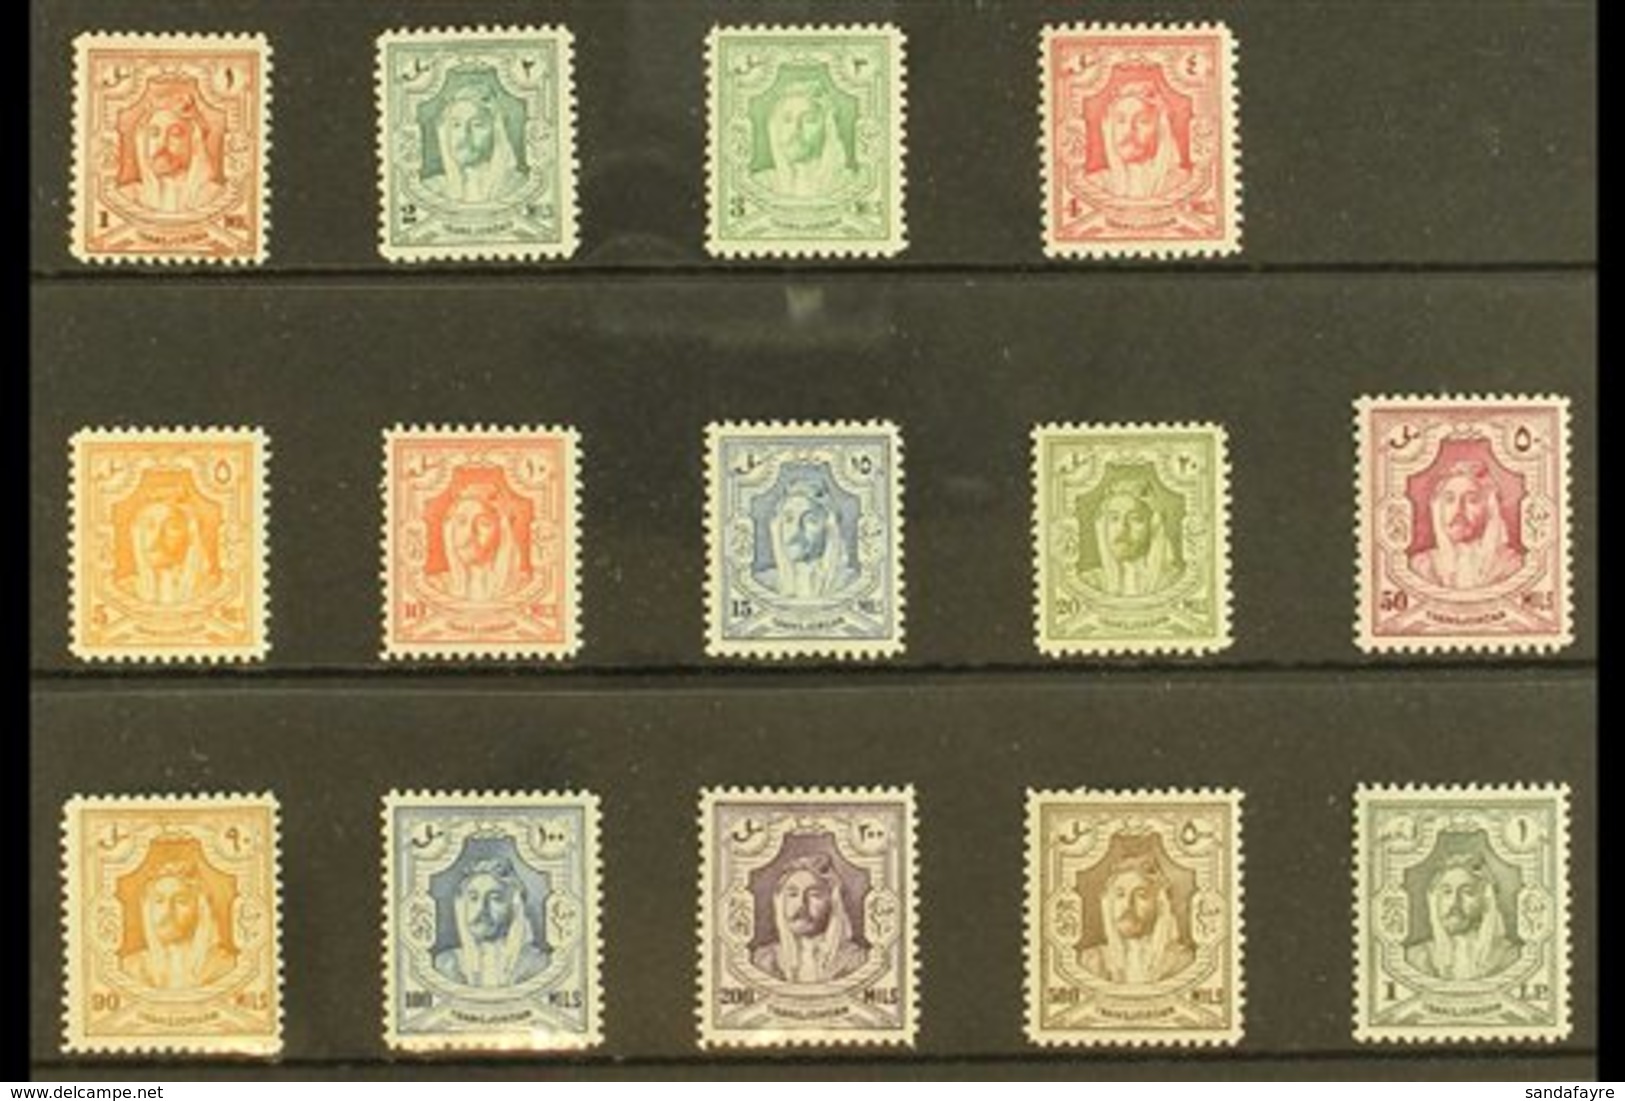 1943-46 Emir Complete Set, SG 230/43, Fine Mint (14 Stamps) For More Images, Please Visit Http://www.sandafayre.com/item - Jordan